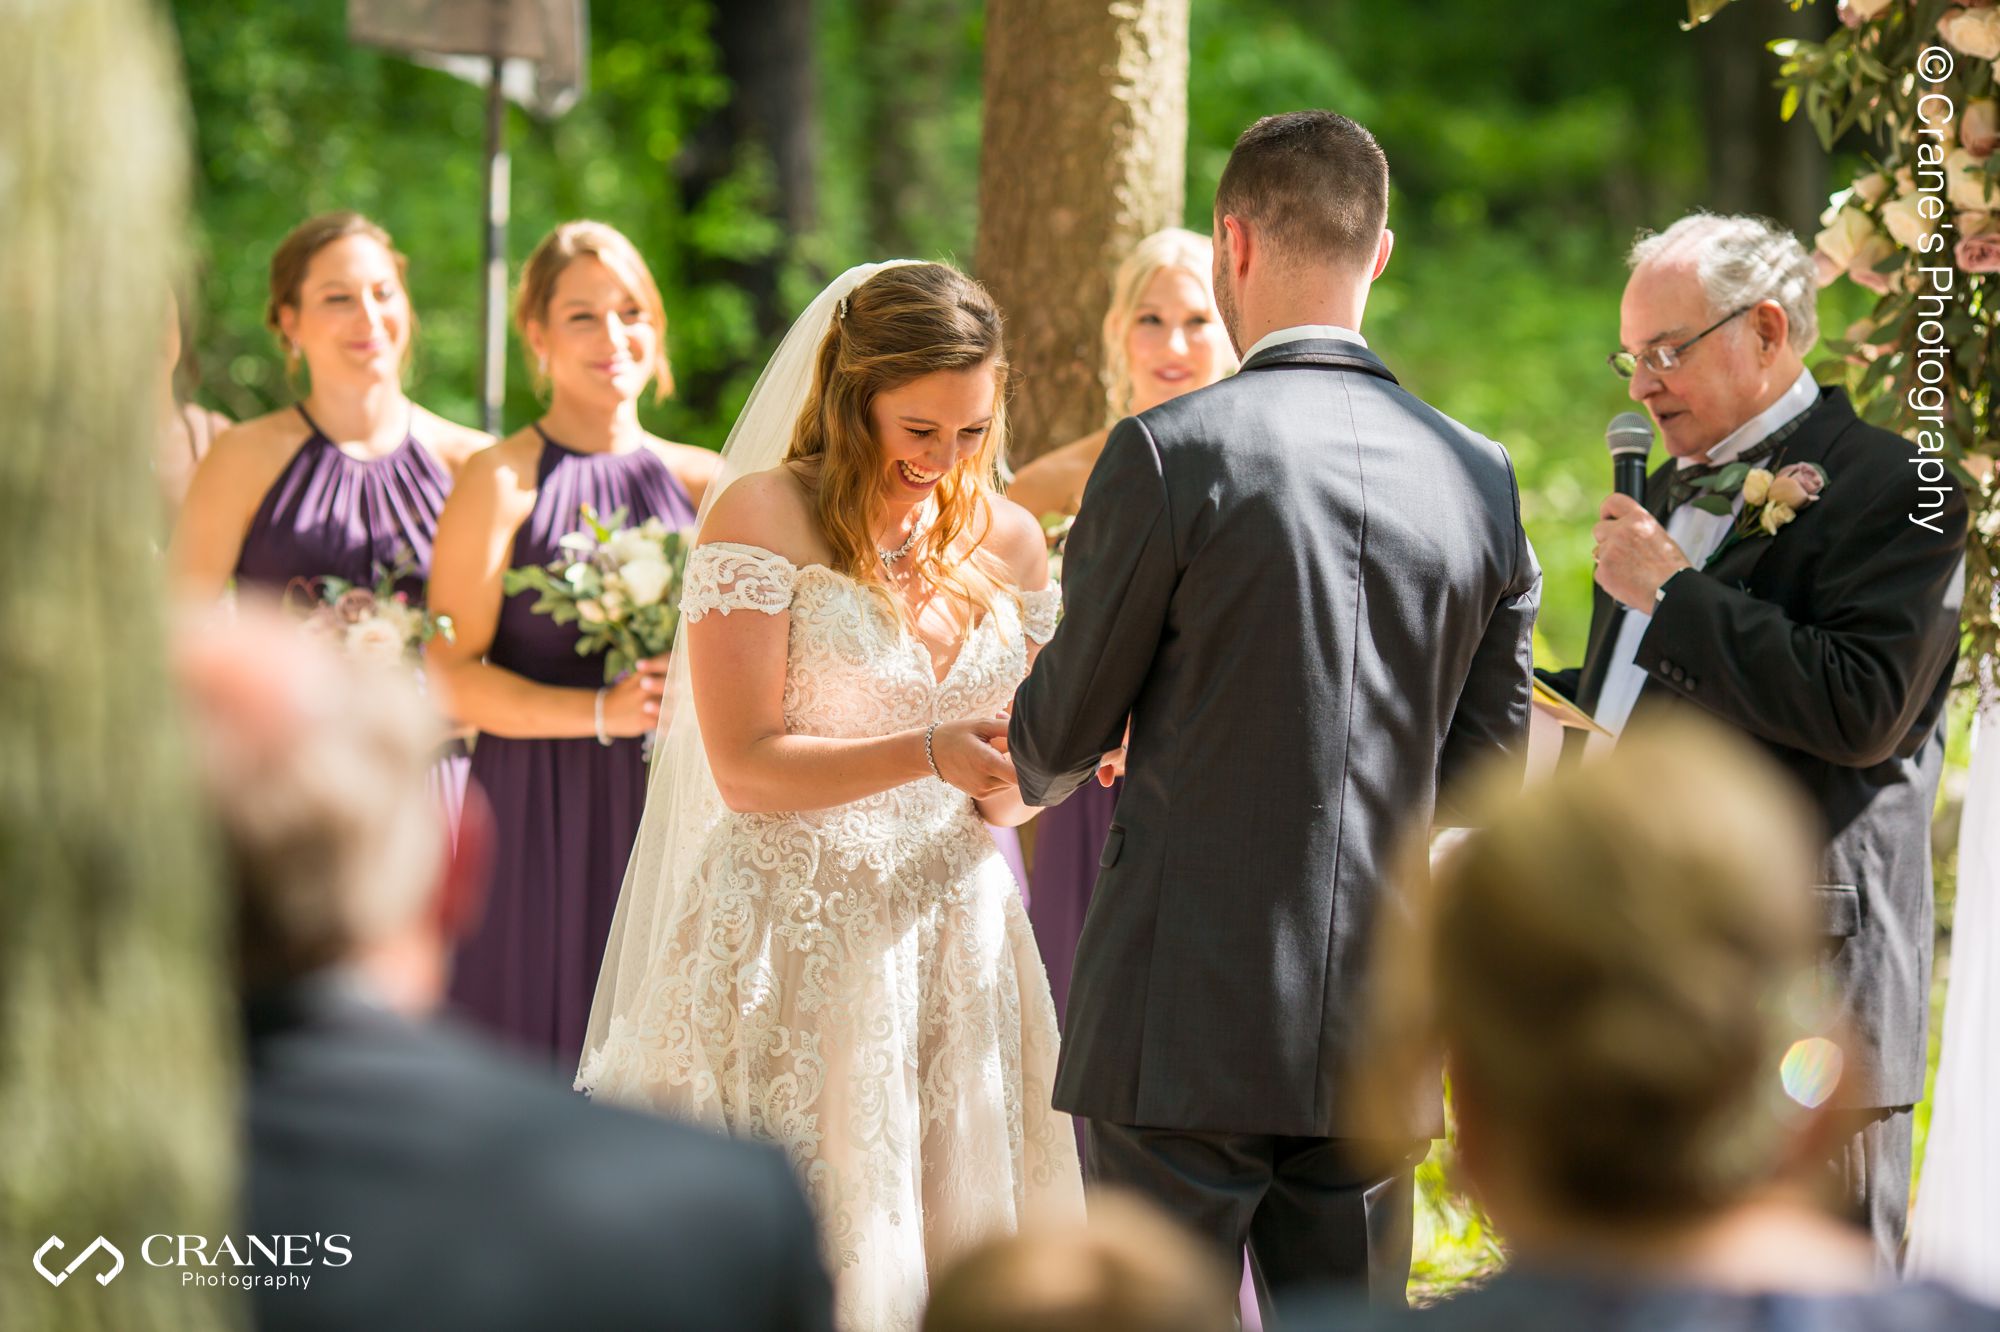 An outdoor wedding ceremony at The Swan Barn Door